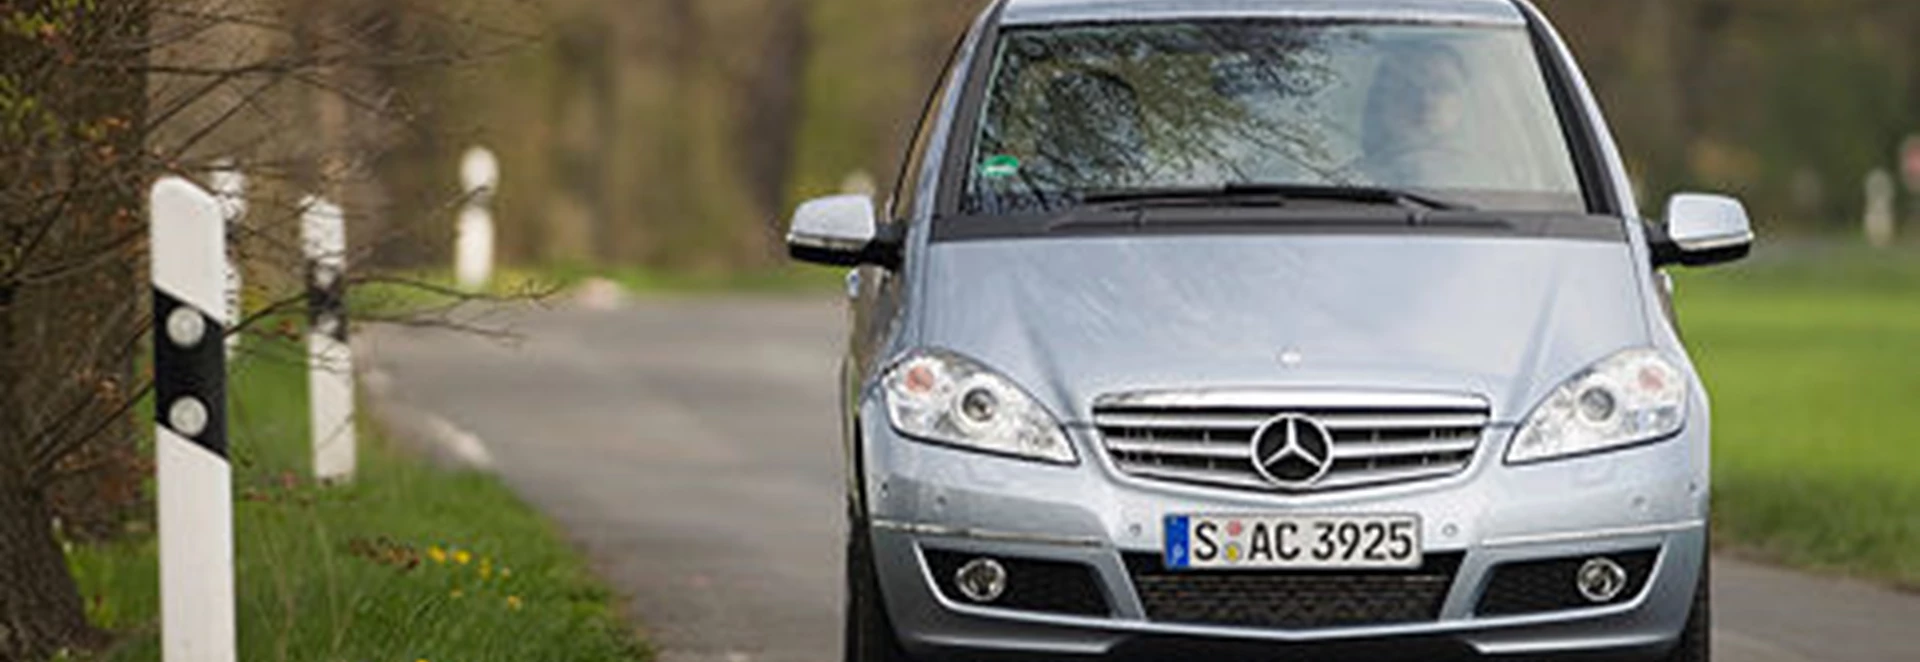 Mercedes-Benz A 180 CDI Avantgarde SE (2005) 